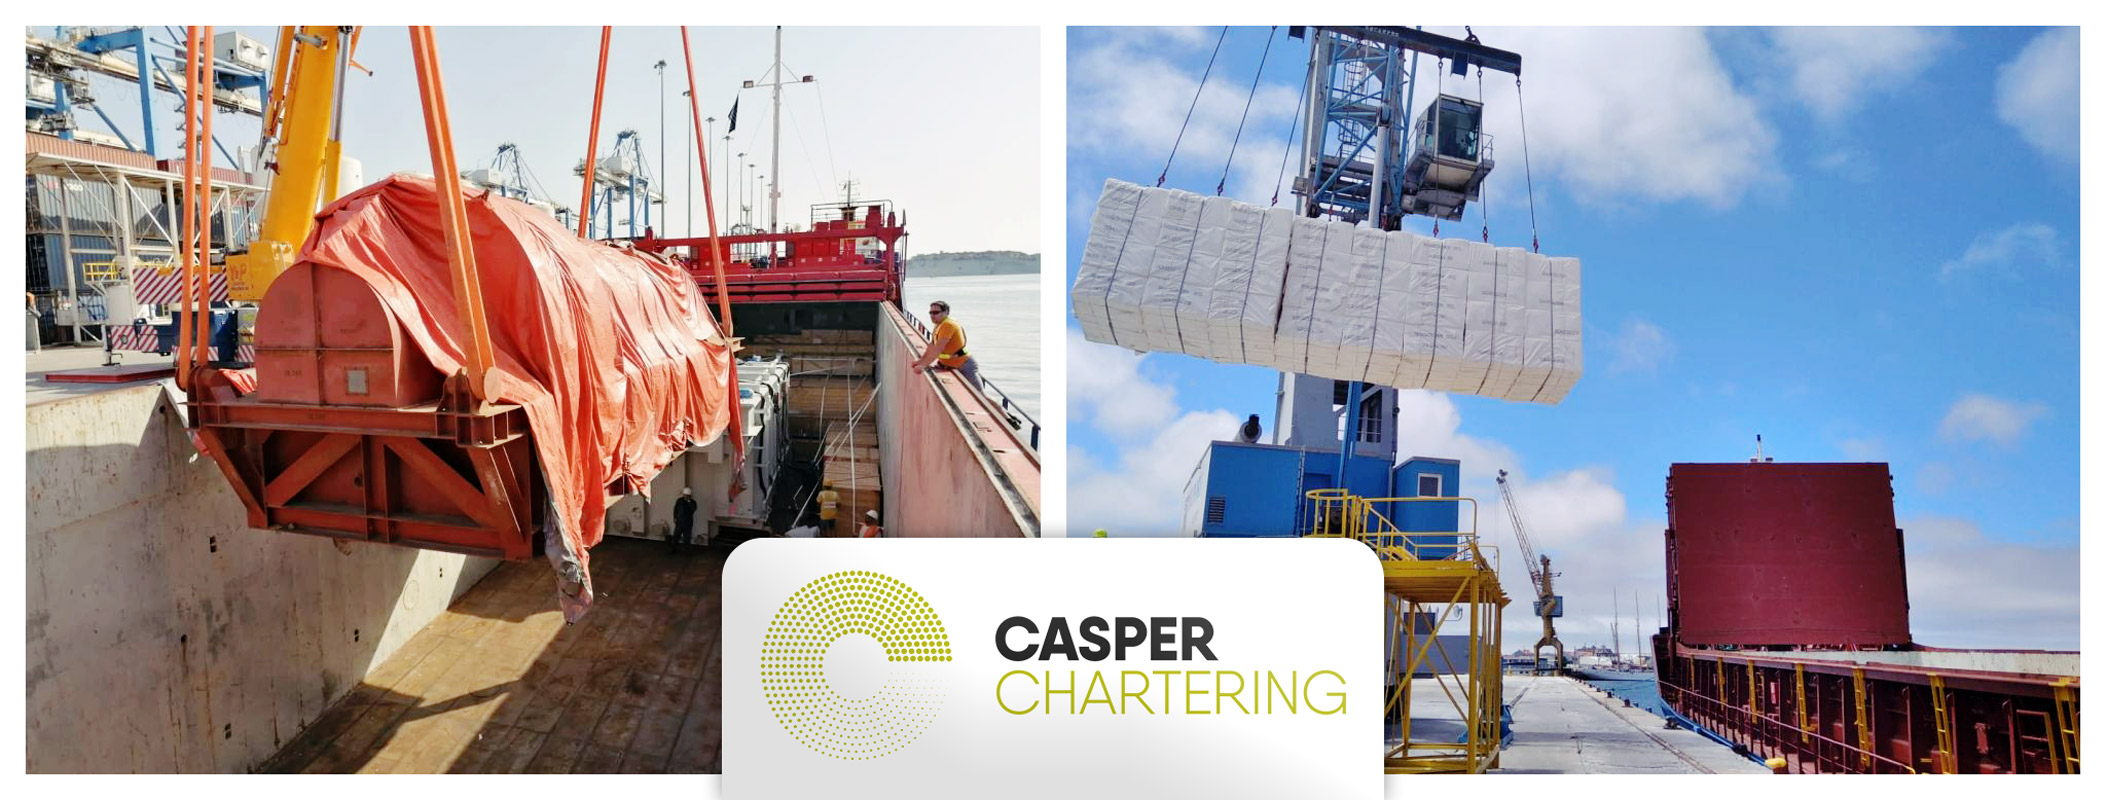 In July Casper Chartering Loaded Project Cargo in Malta and Woodplulp Cargo in Portugal